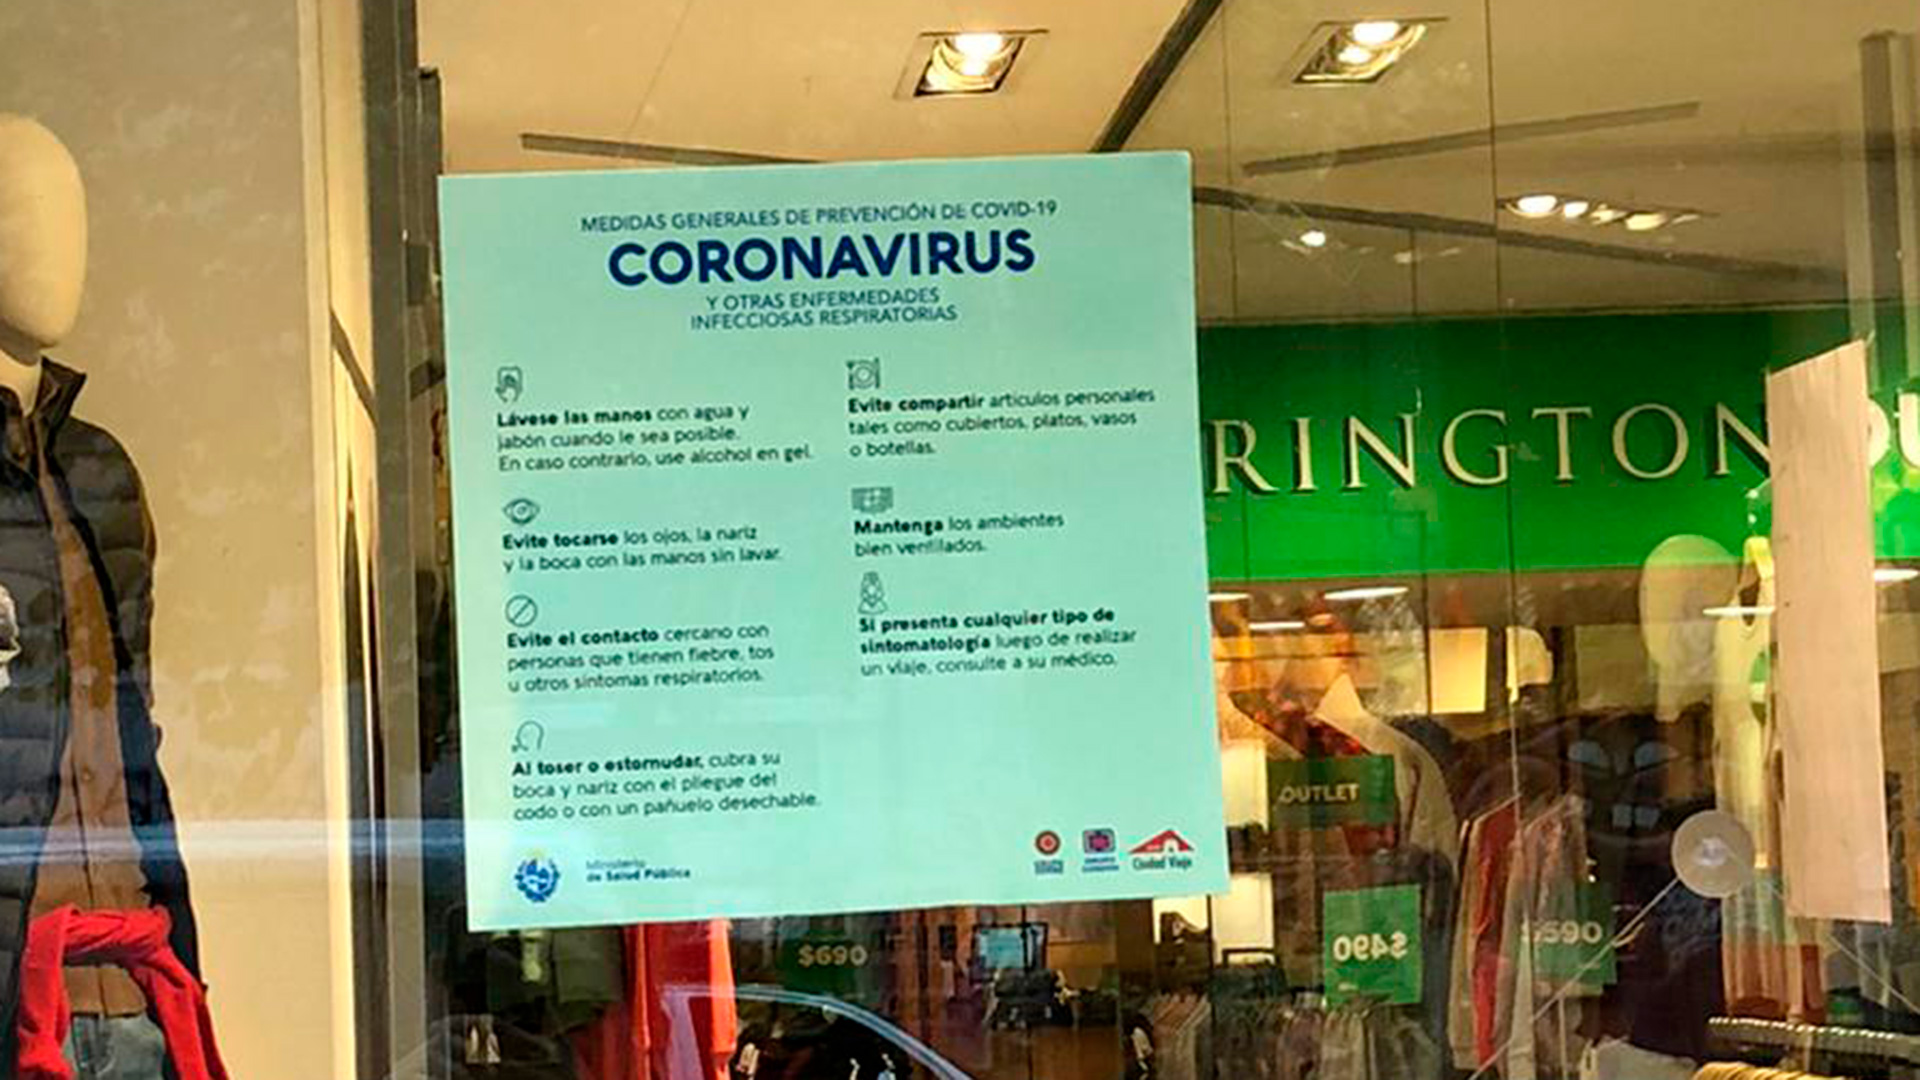 Las medidas de protección para los tiempos de coronavirus, en la vidriera de un comercio (Catalina Weiss)